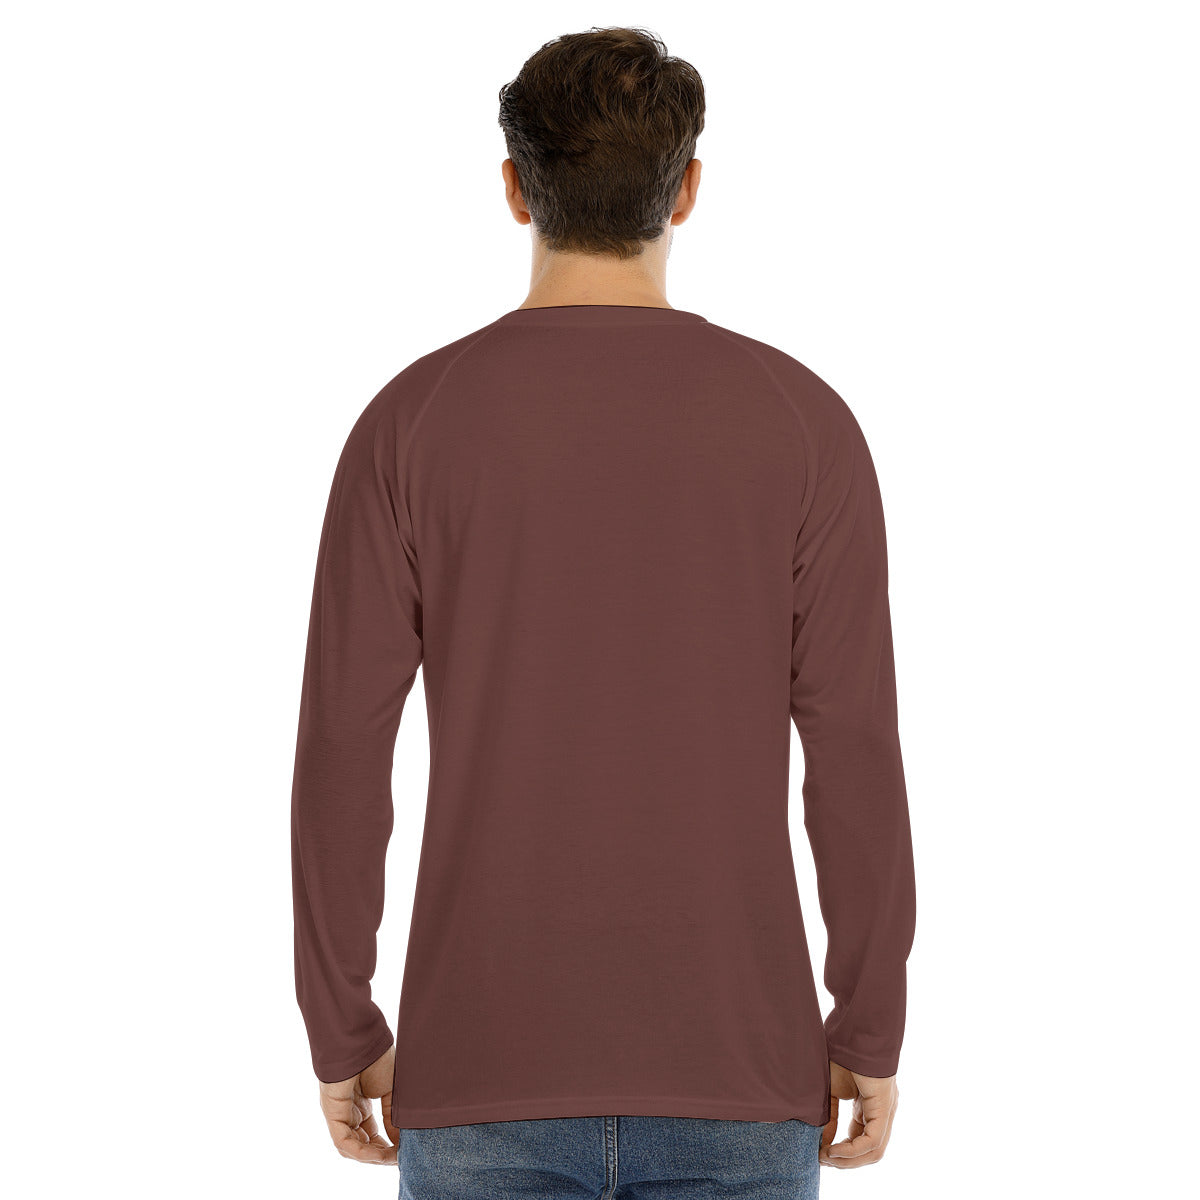 Fan 101 -- Men's Long Sleeve T-shirt With Raglan Sleeve